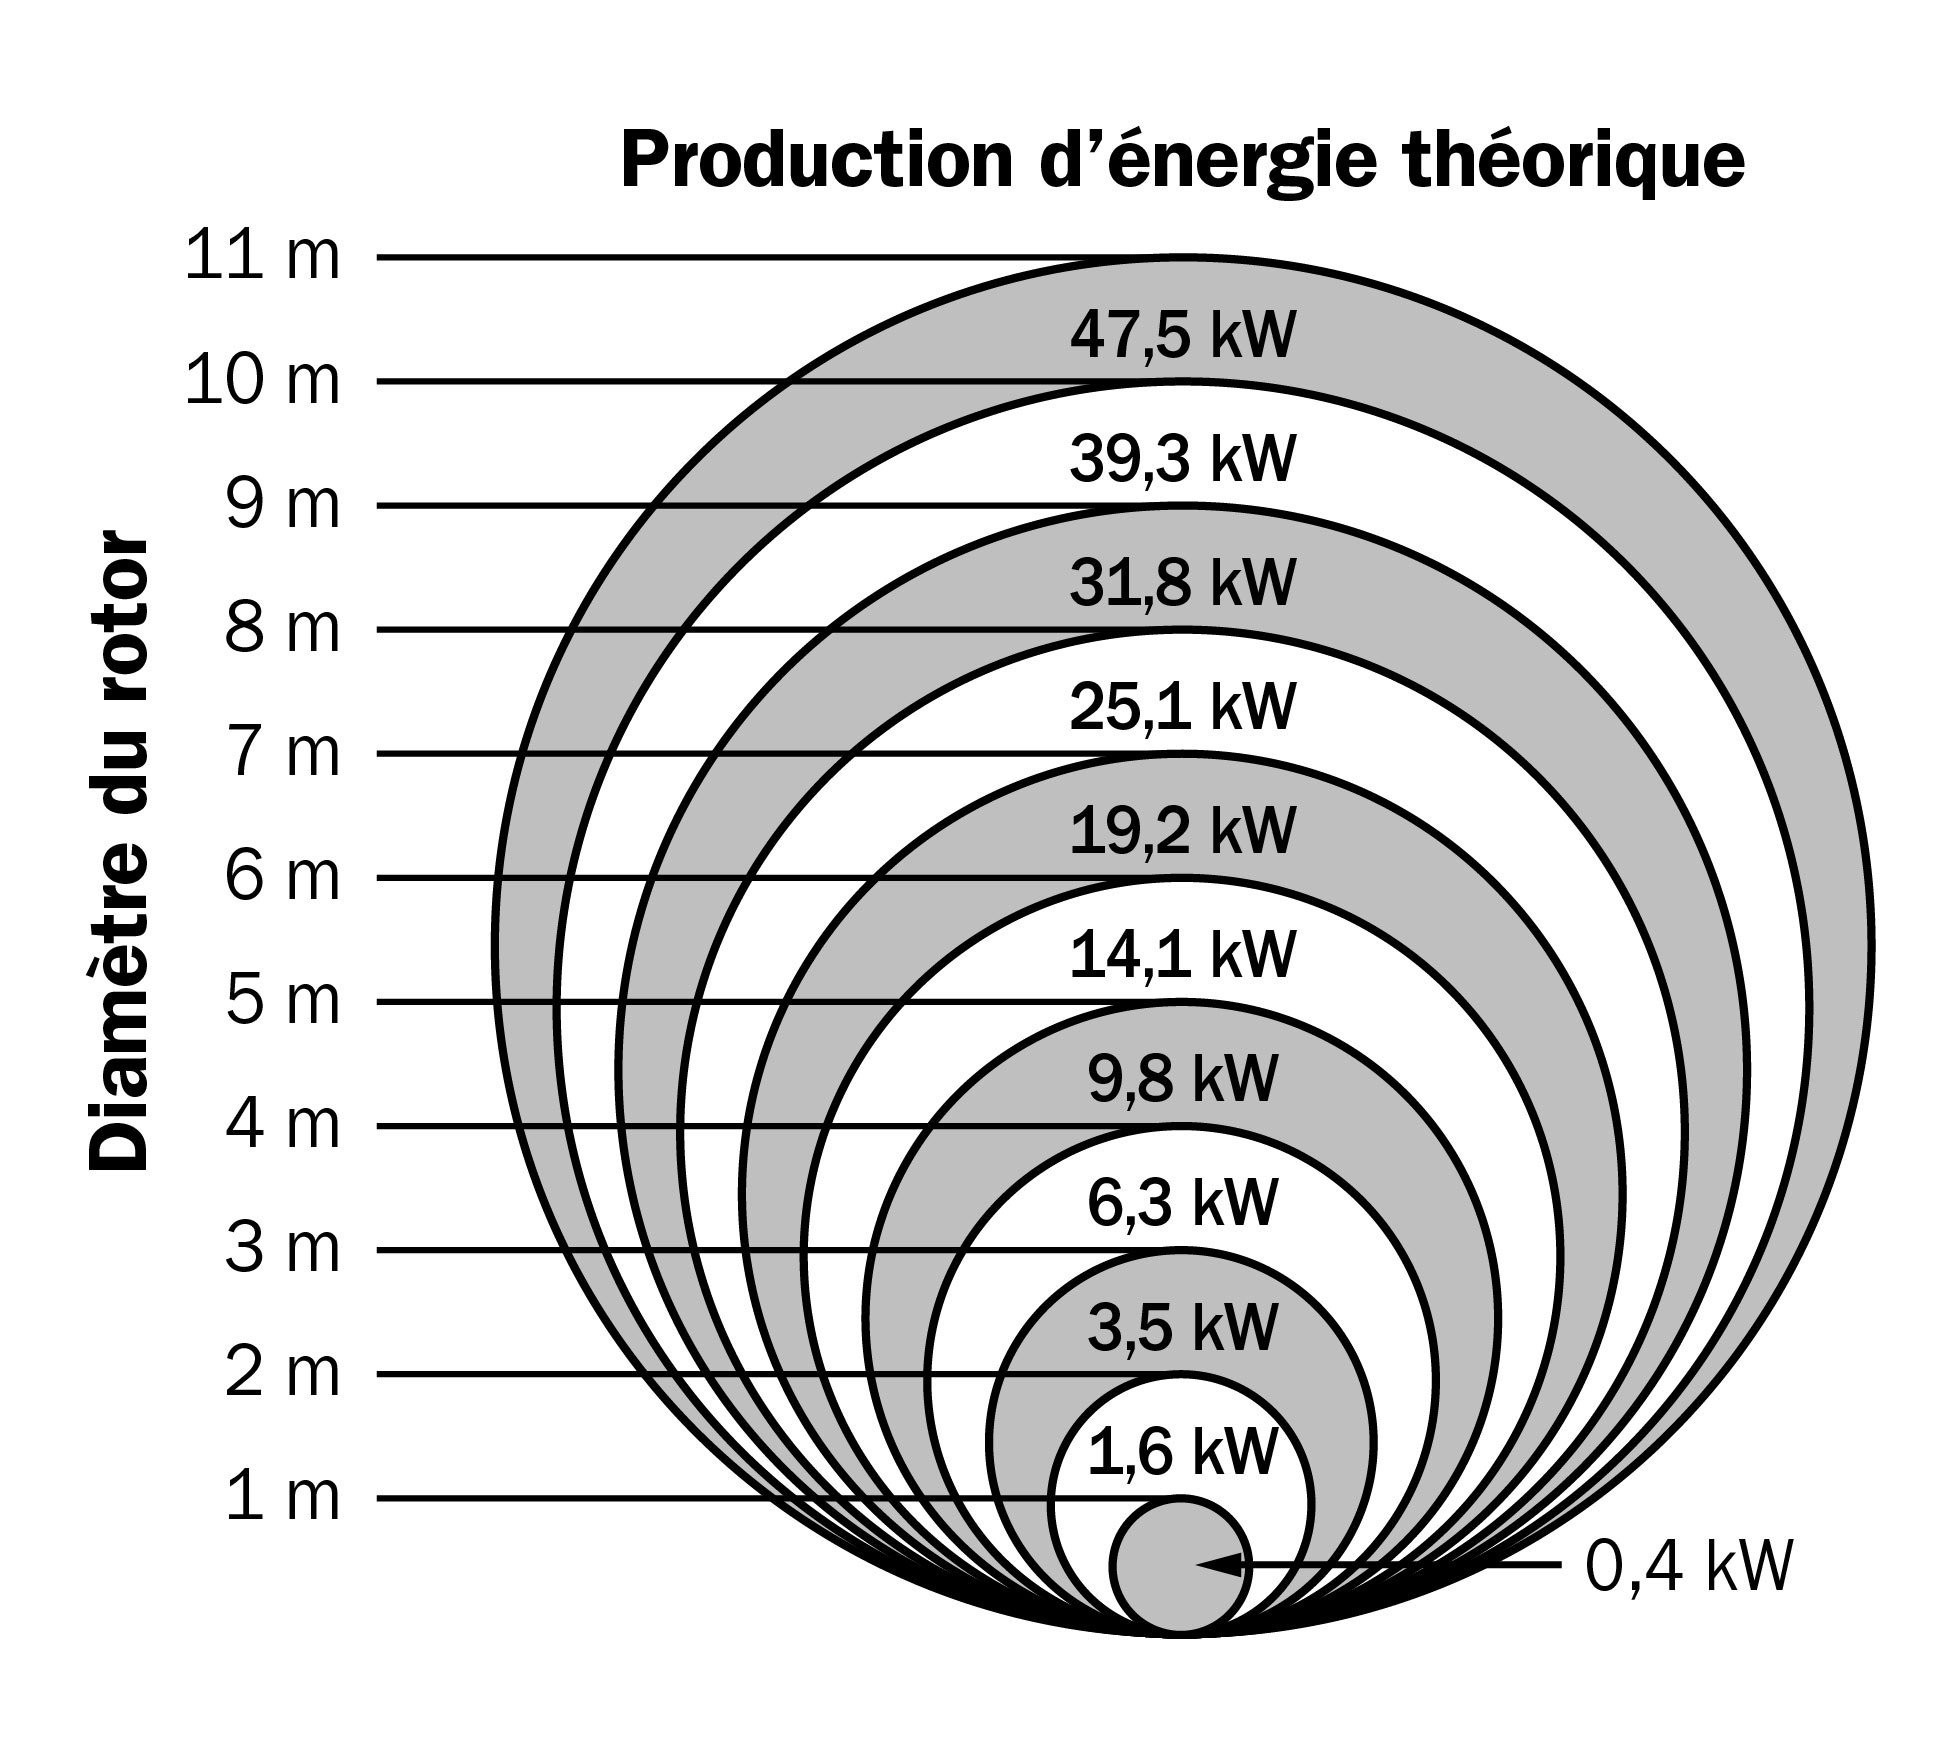 La production d’énergie théorique dépend du diamètre du rotor pour une petite éolienne avec une vitesse de vent de 10 mètres par seconde